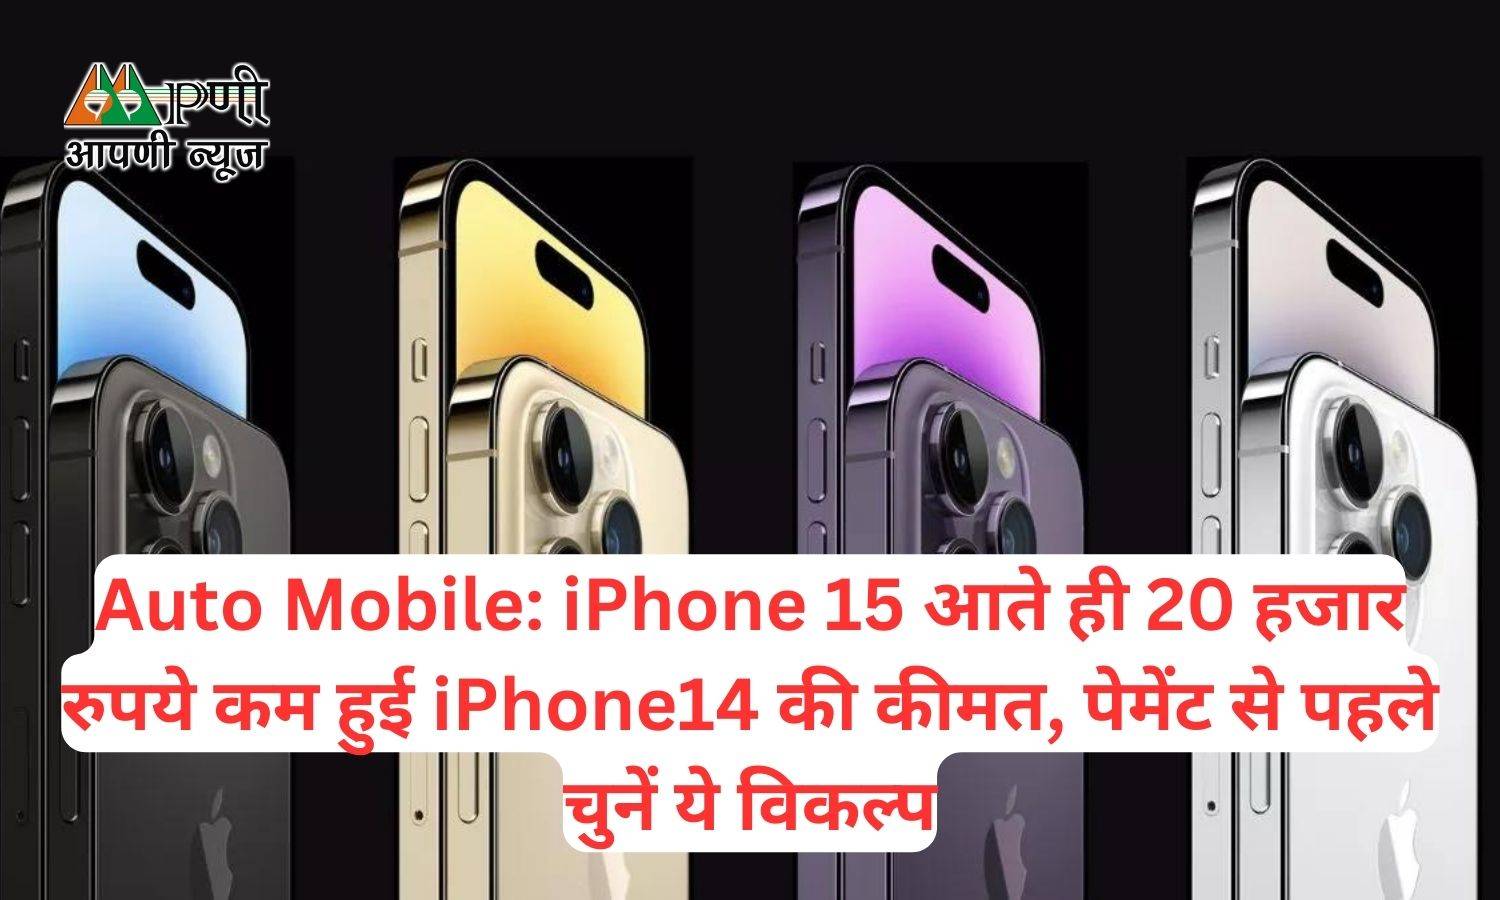 Mobile: iPhone 15 आते ही 20 हजार रुपये कम हुई iPhone14 की कीमत, पेमेंट से पहले चुनें ये विकल्प